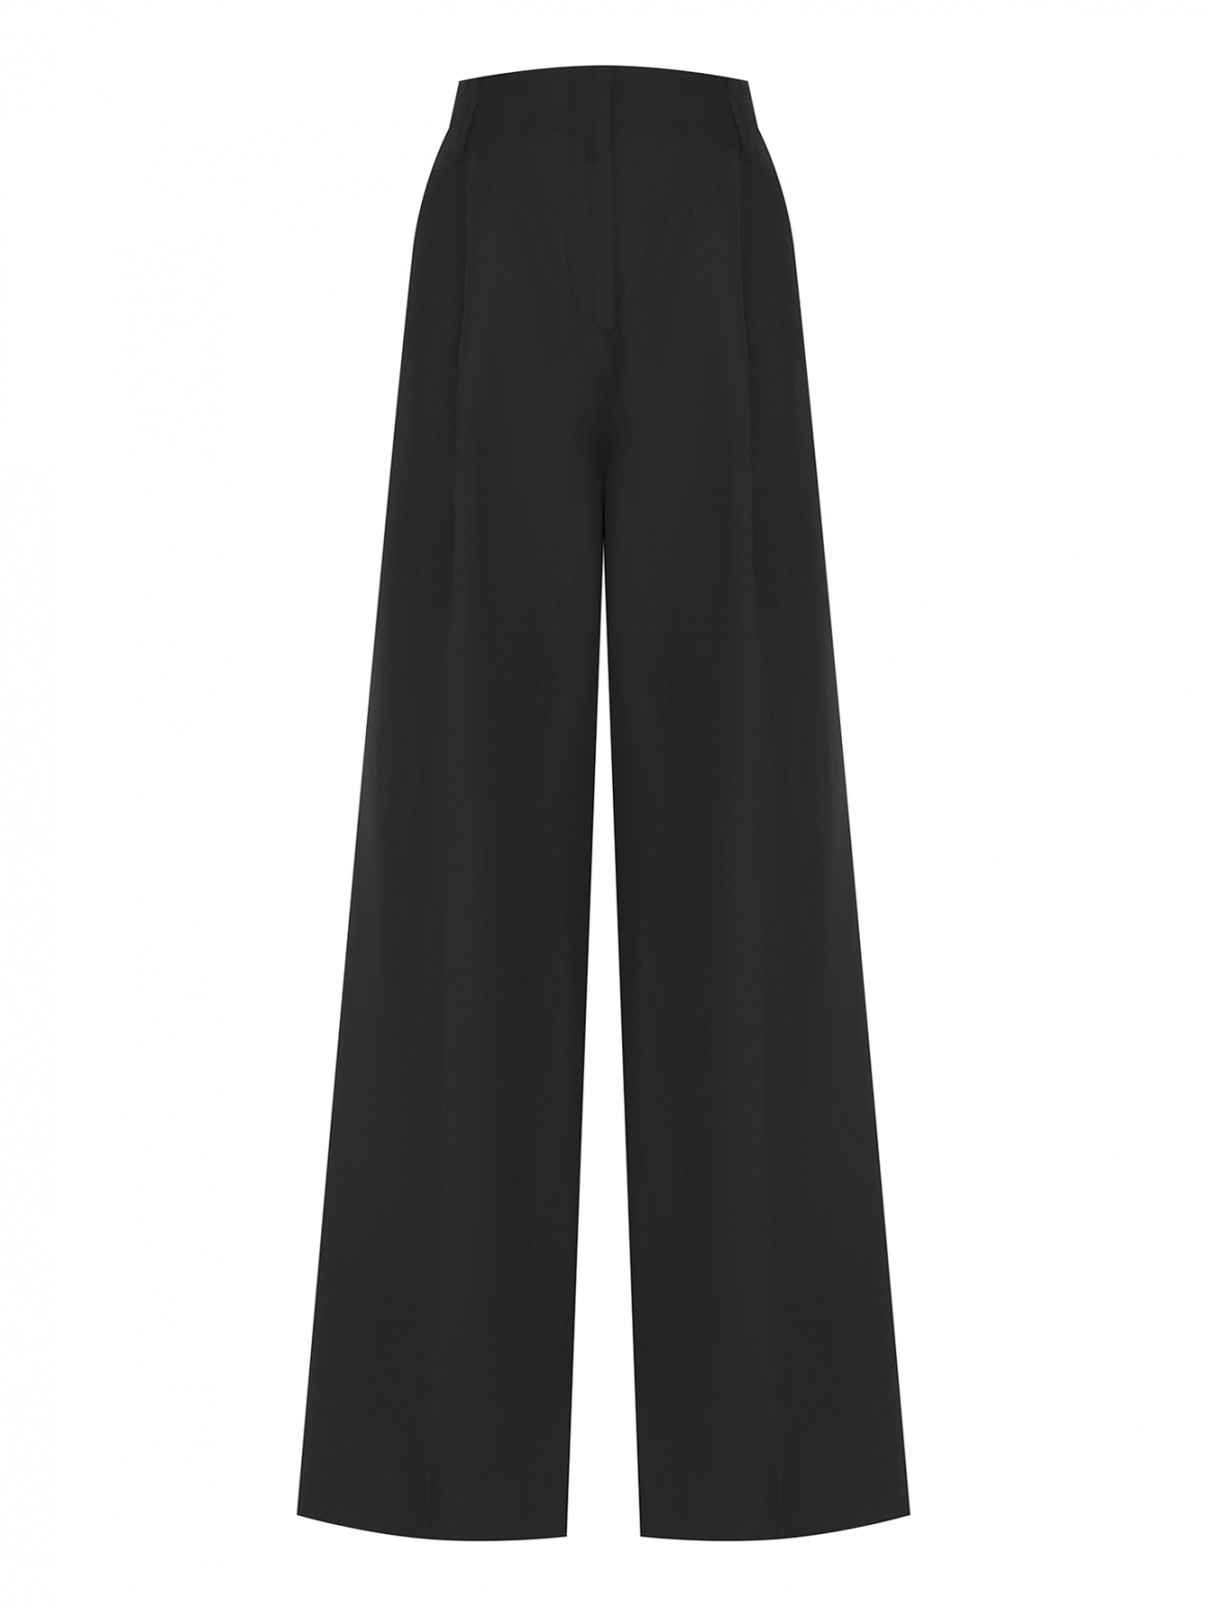 Широкие брюки с карманами Dorothee Schumacher  –  Общий вид  – Цвет:  Черный